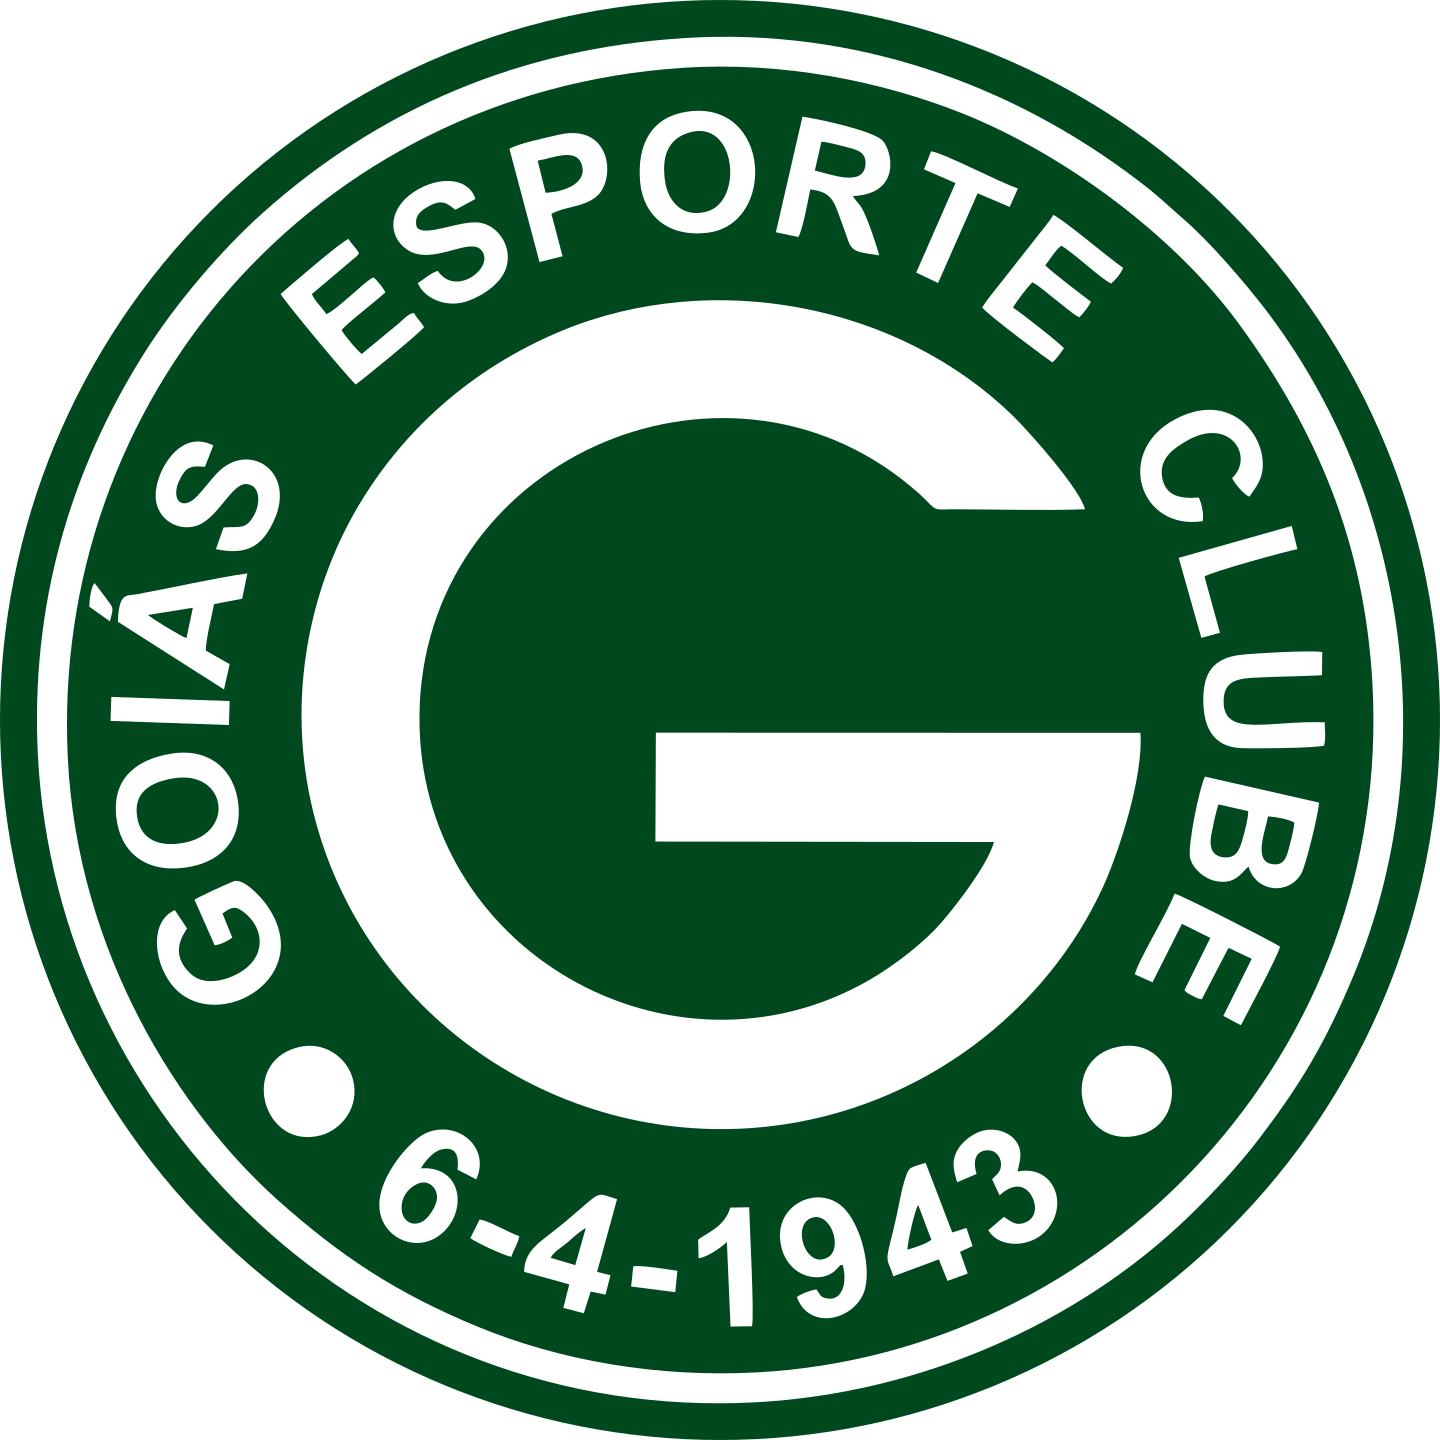 goias logo 2 - Goiás EC Logo